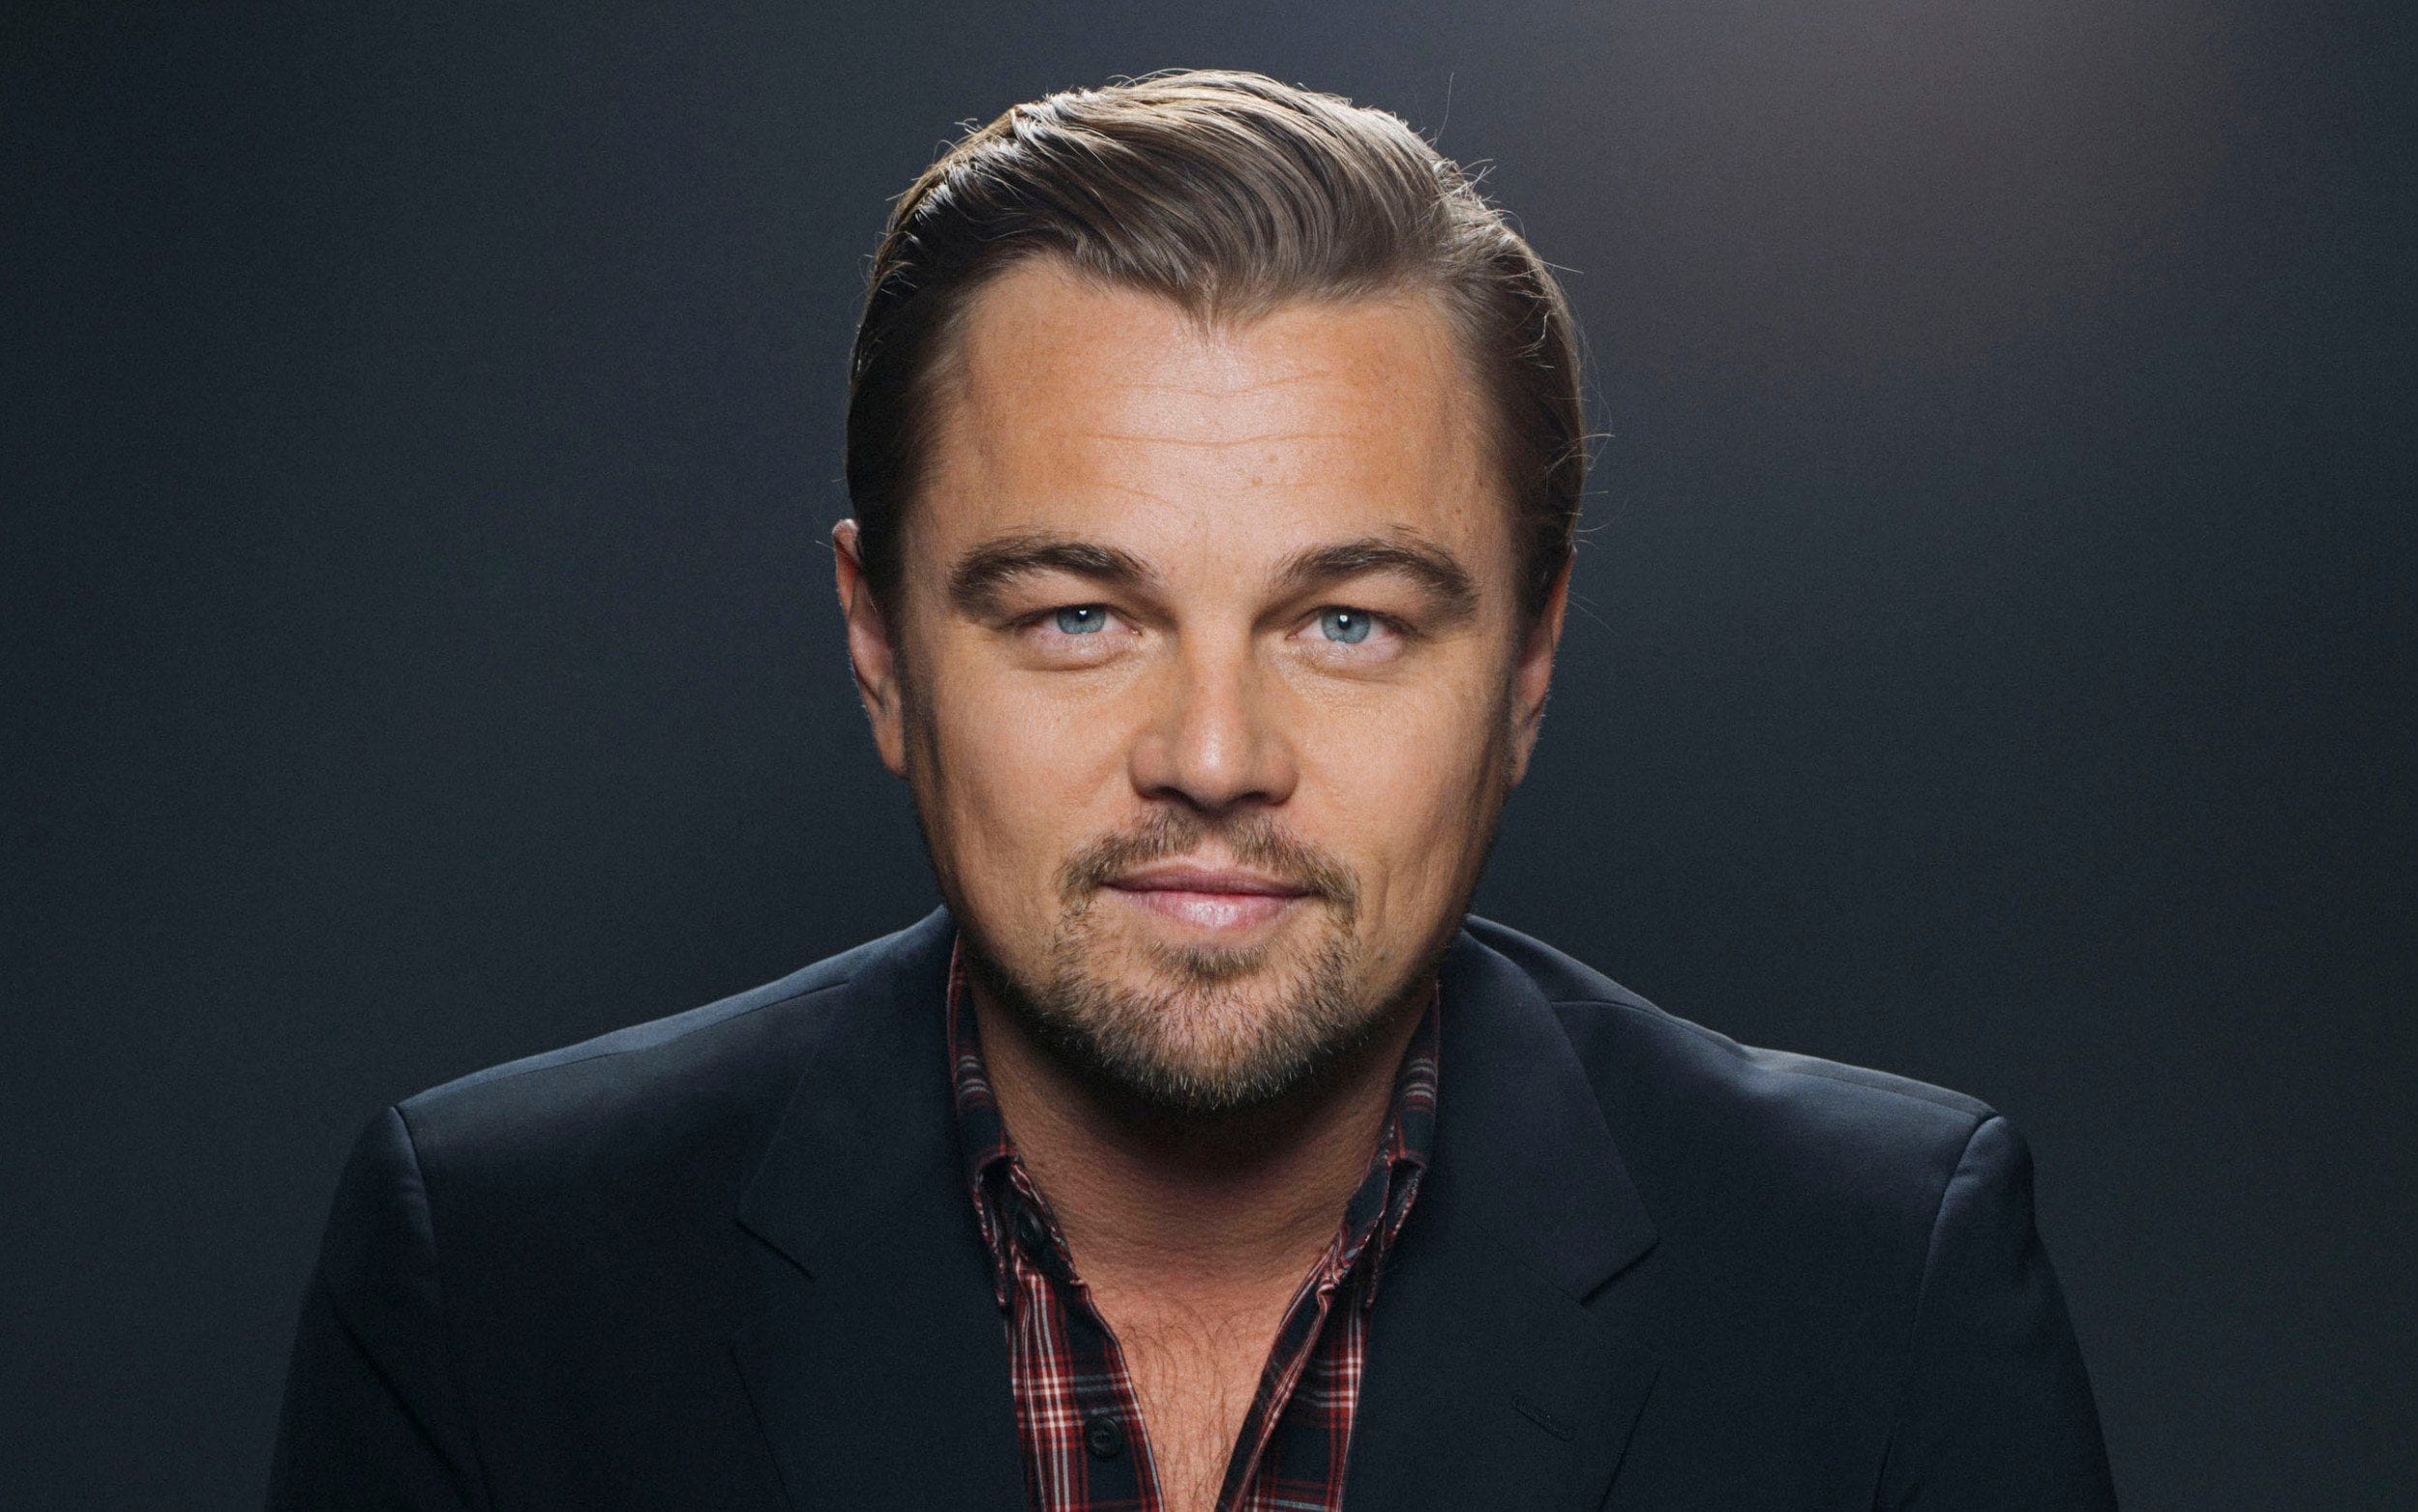 Leonardo DiCaprio Biography - The Celeb Guru